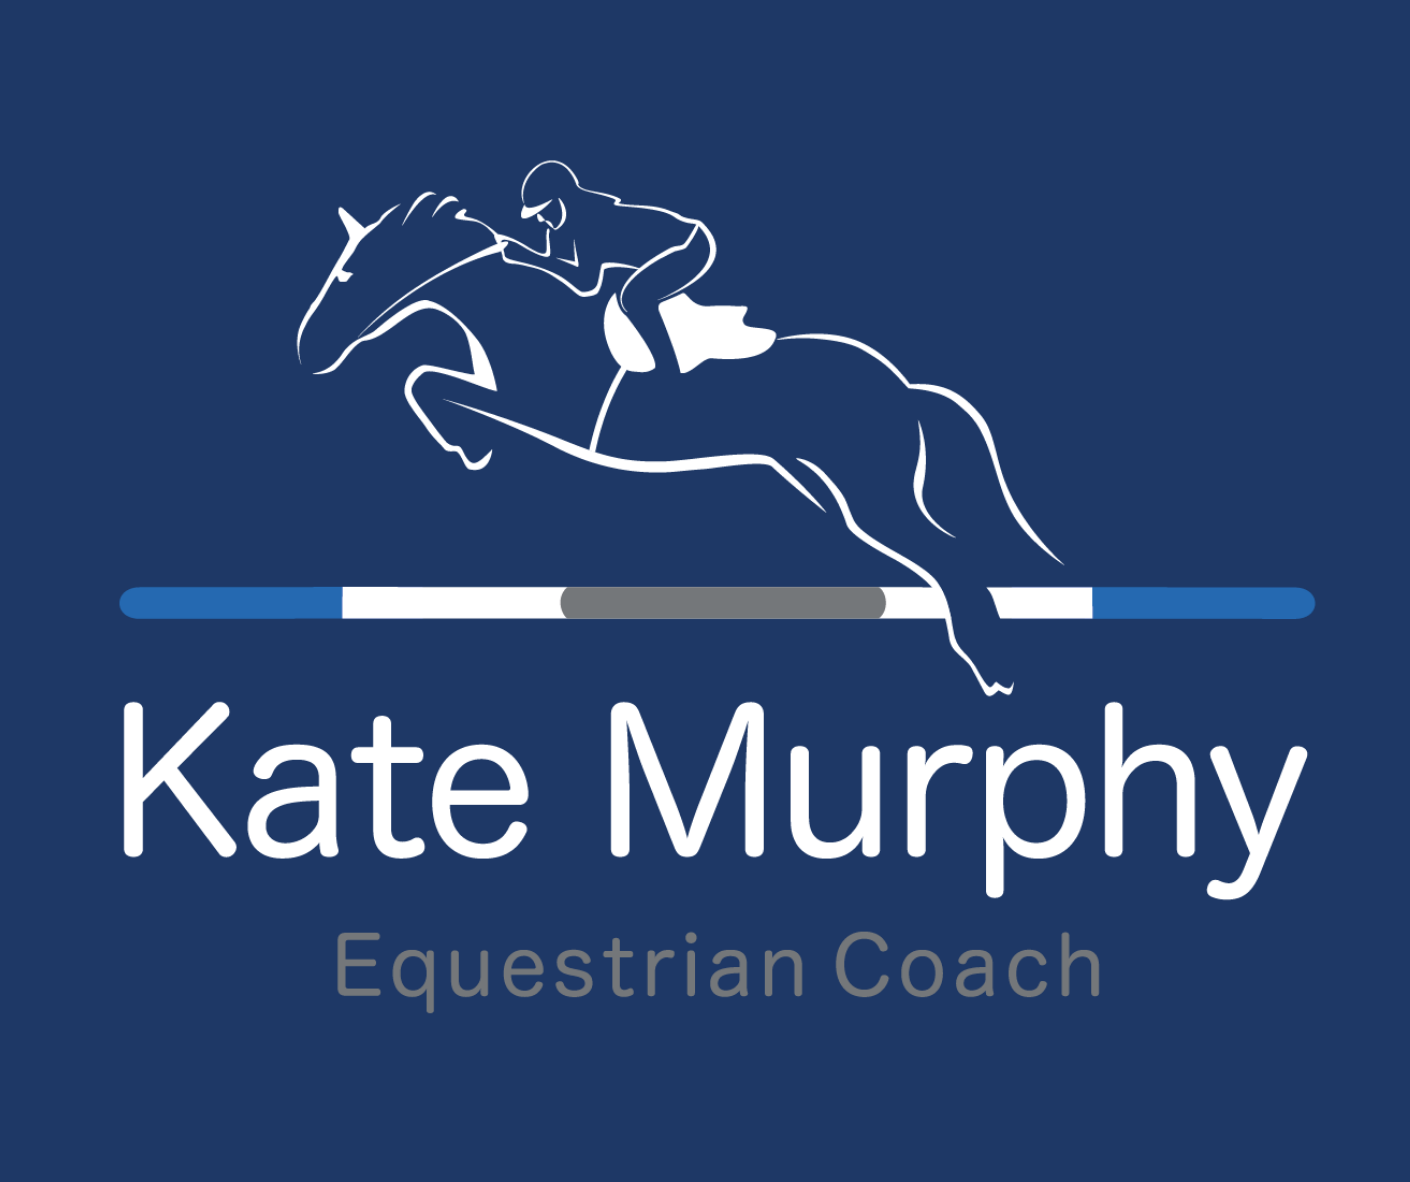 Kate Murphy Equestrian Coach